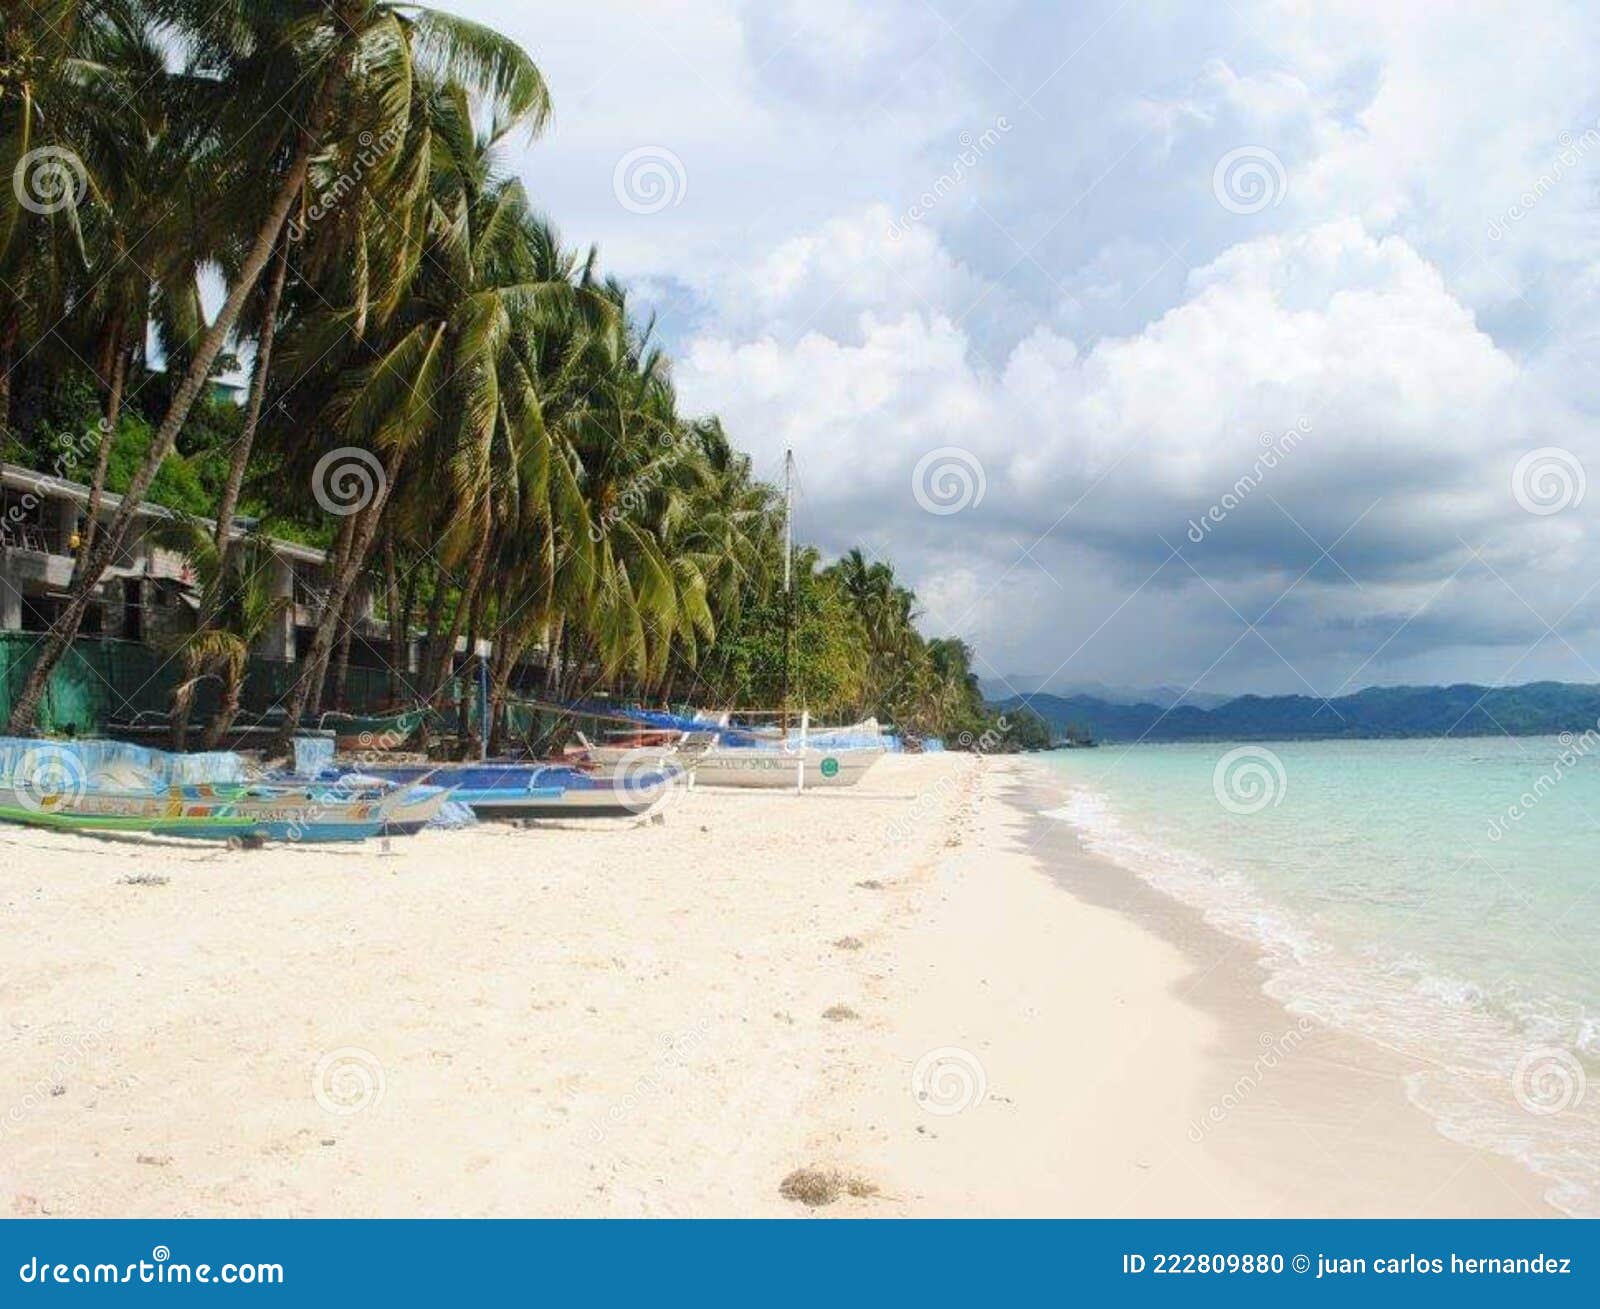 playa blanca borÃÂ¡cay, malay, filipinas